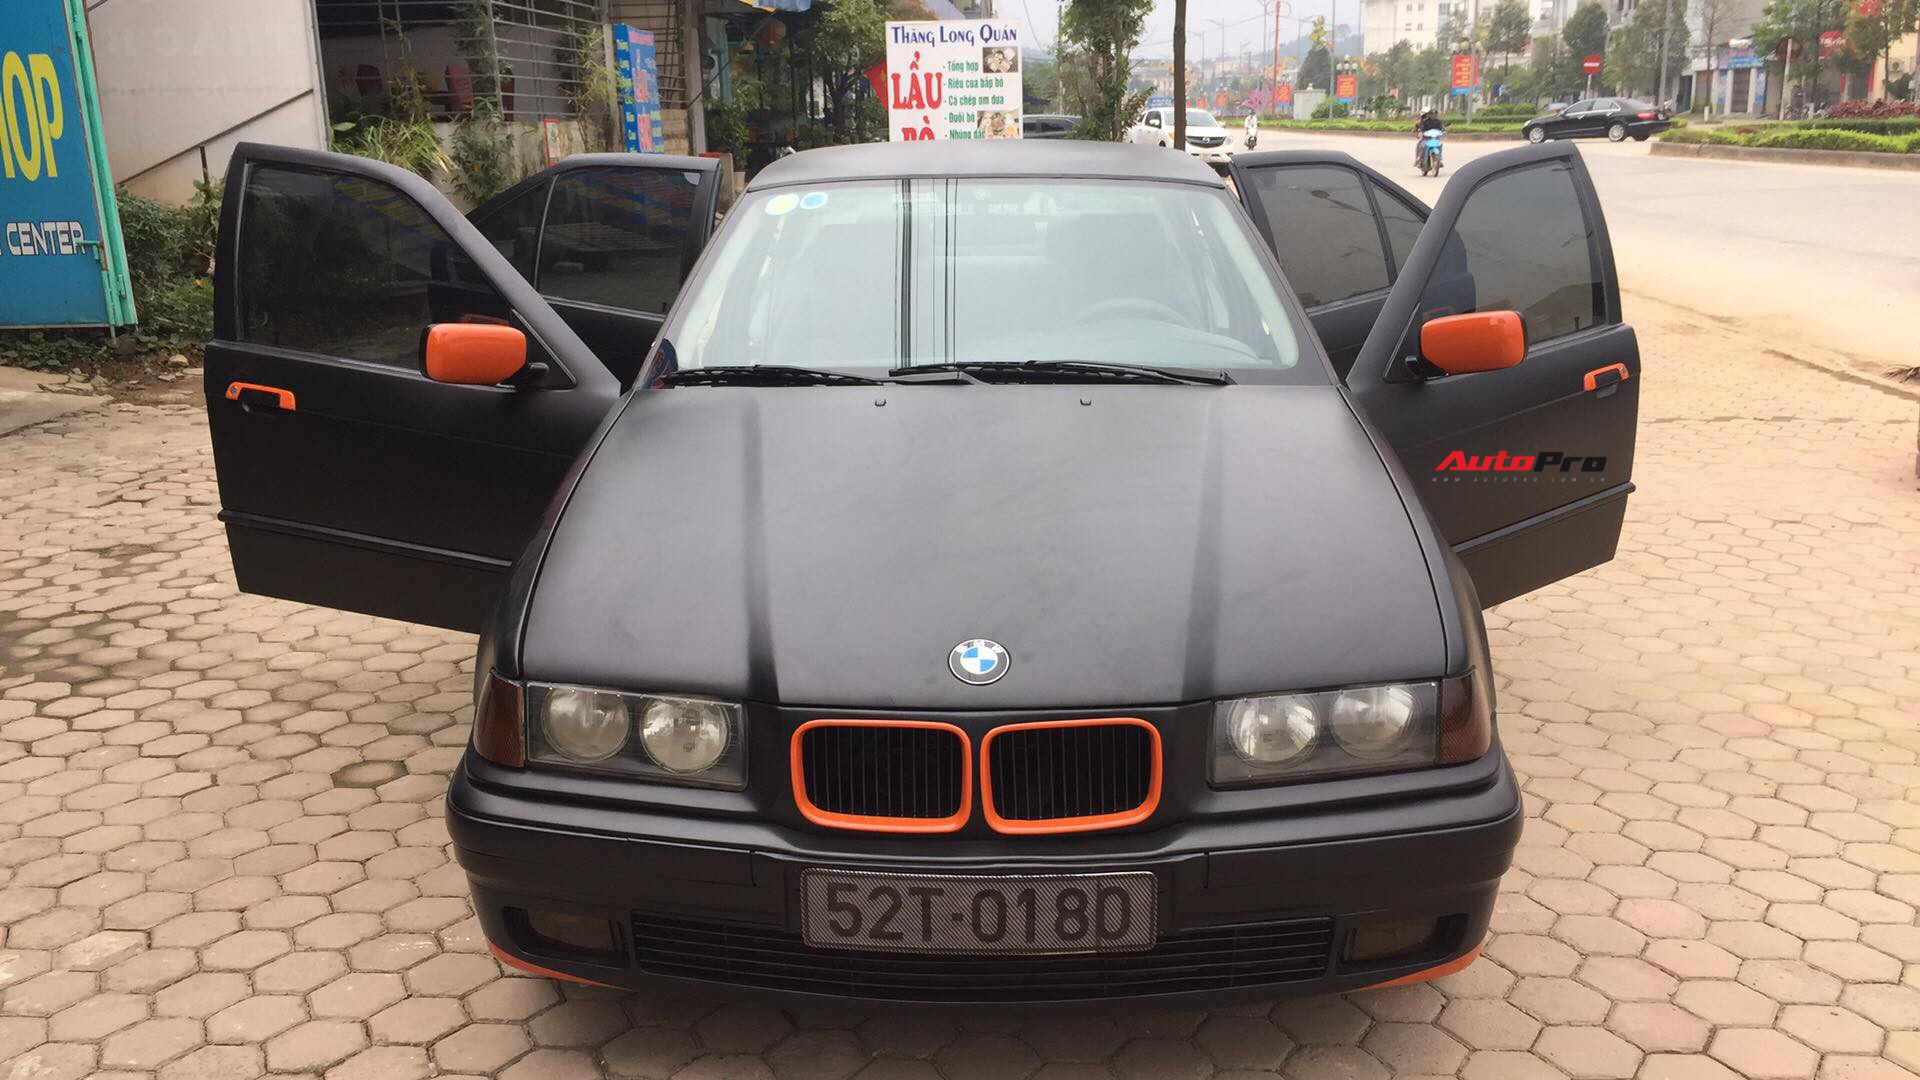 Mua bán xe BMW 3 Series cũ giá rẻ còn rất mới